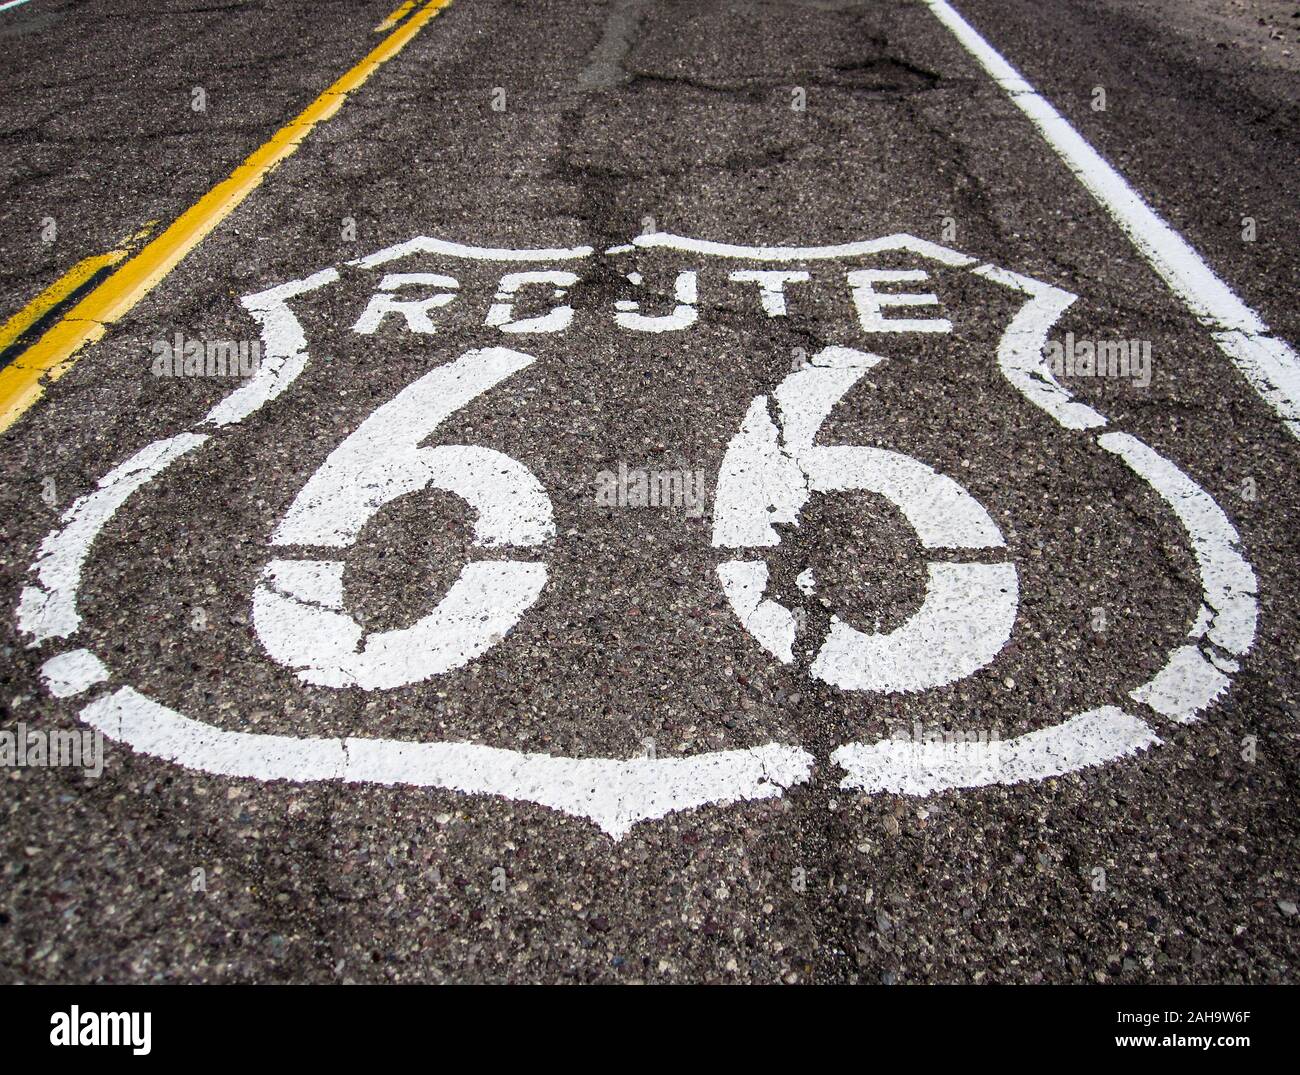 Longue route avec un signe de route 66 peint sur elle Banque D'Images